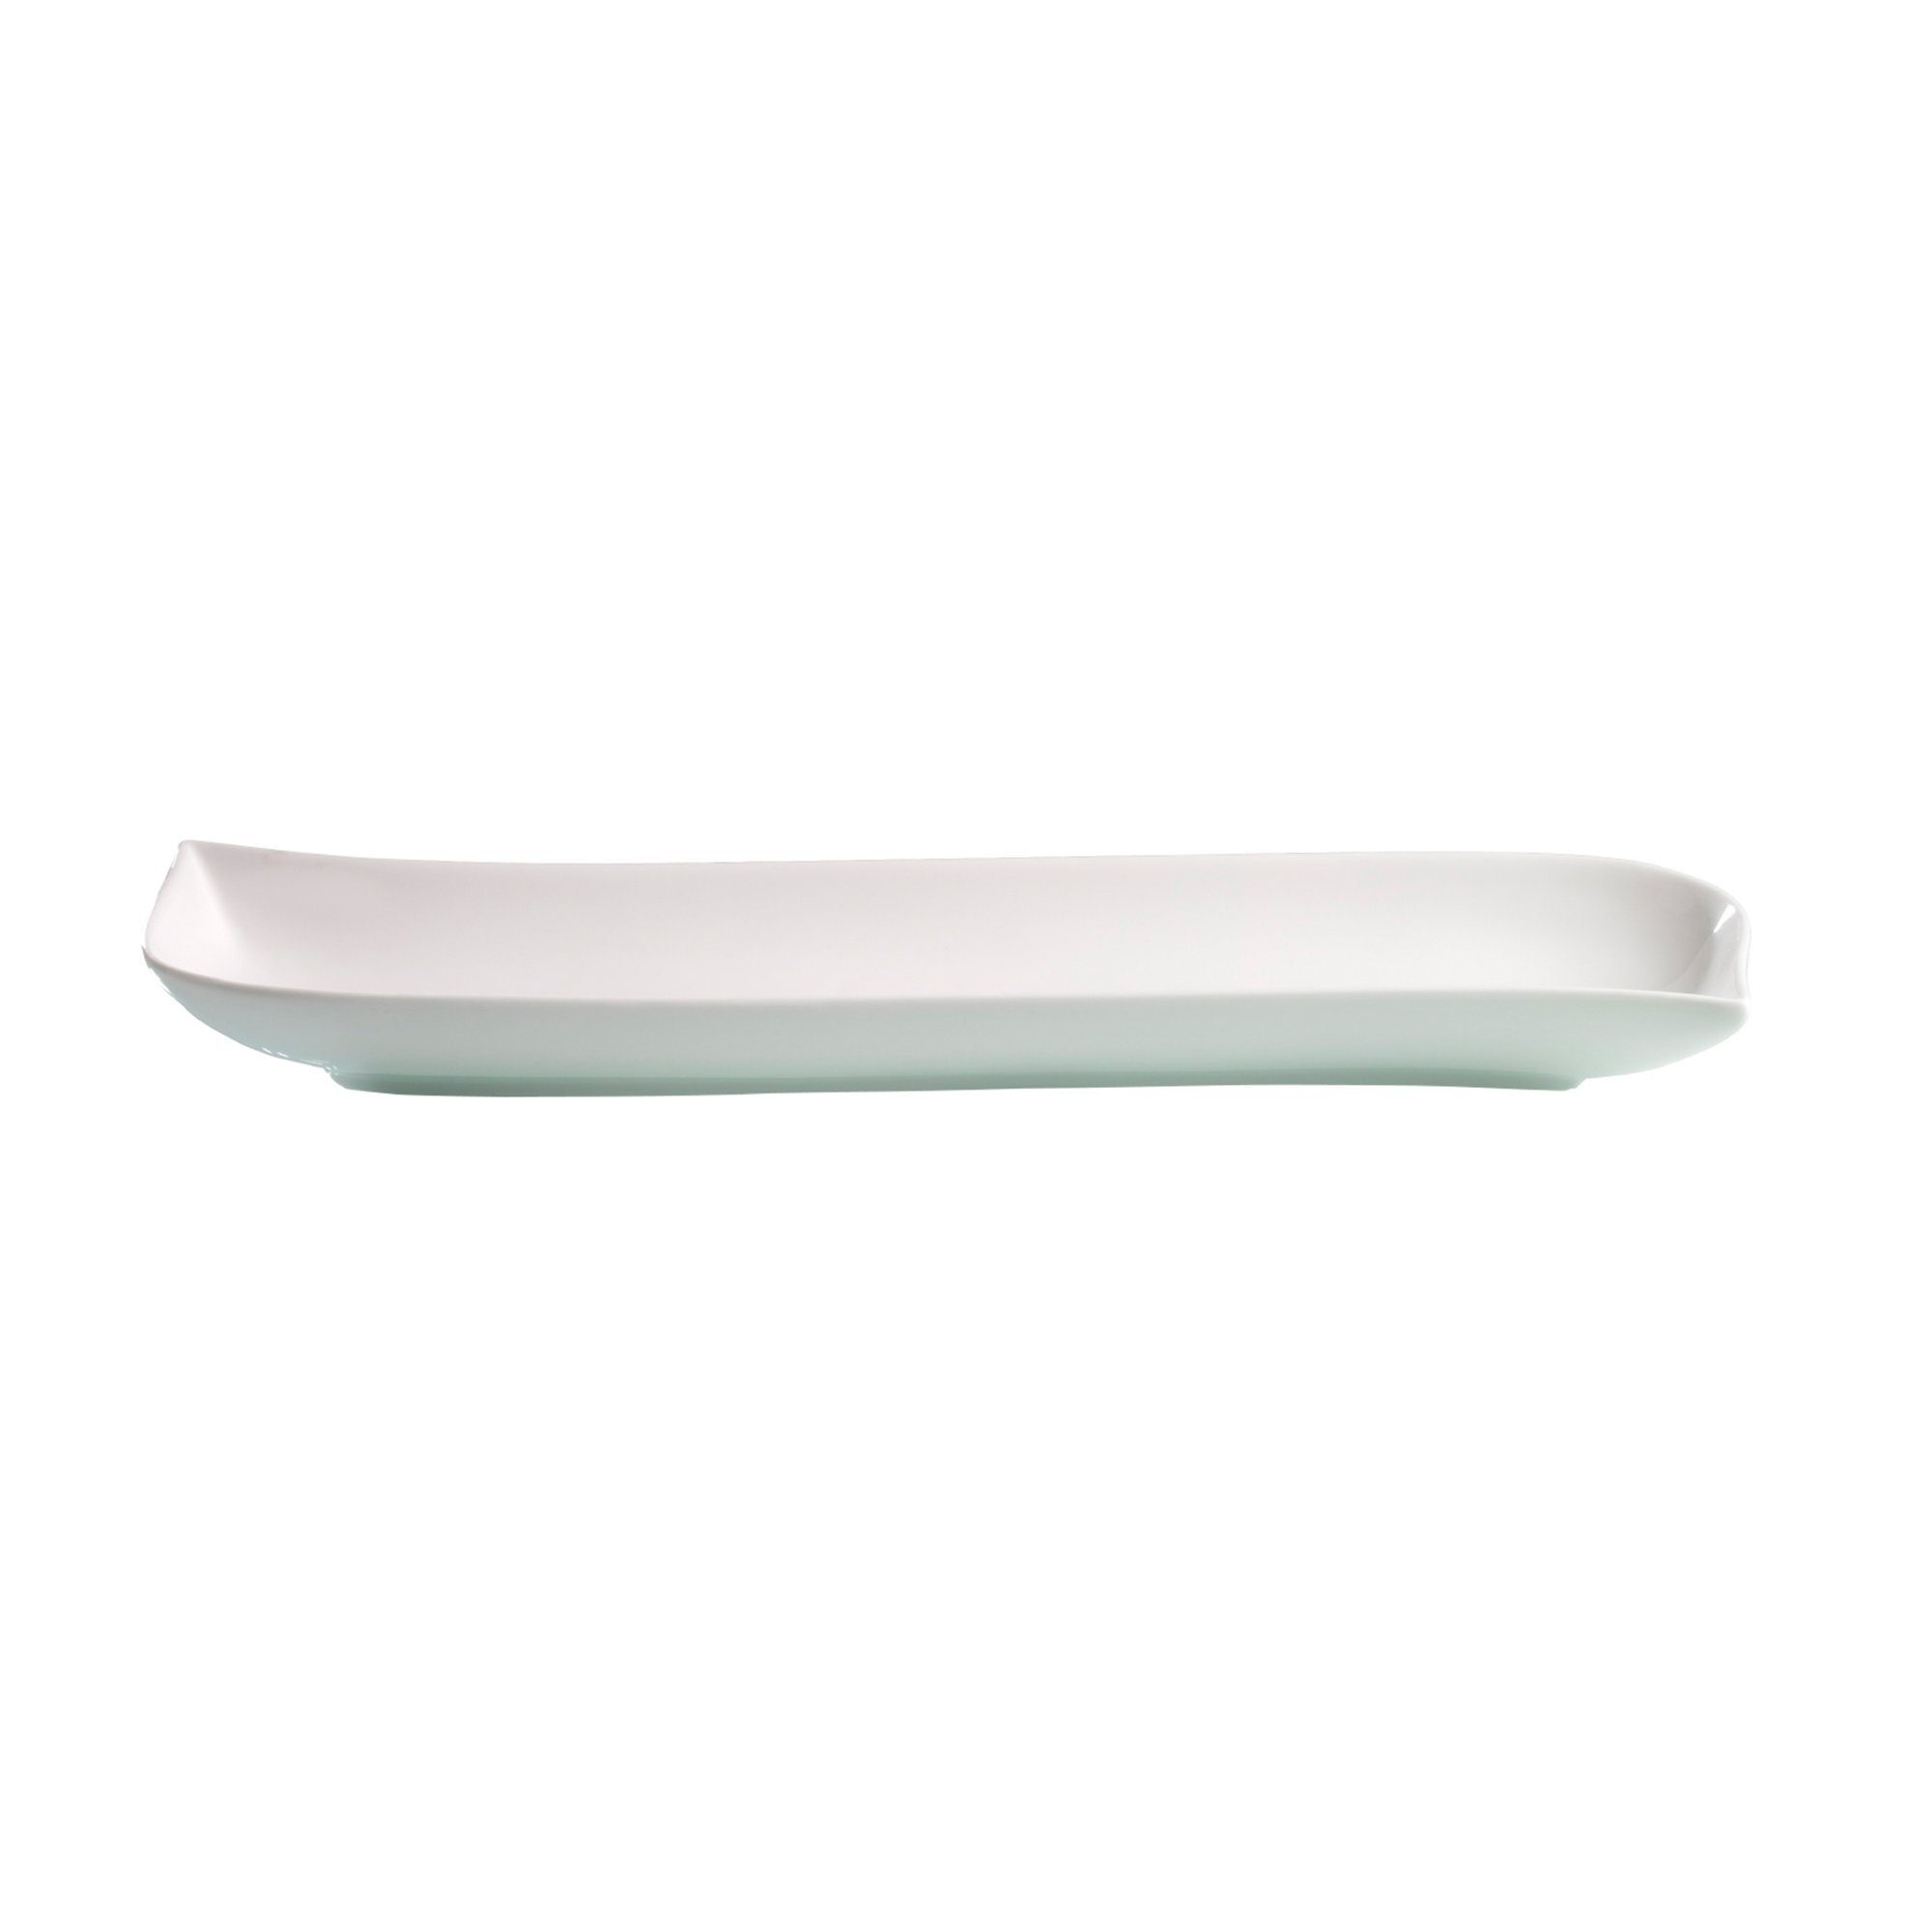 Ritzenhoff & Breker Servierschale Baguette Schale Melodie weiß geschwungene Form eckig 36 cm, Porzellan | Speiseteller